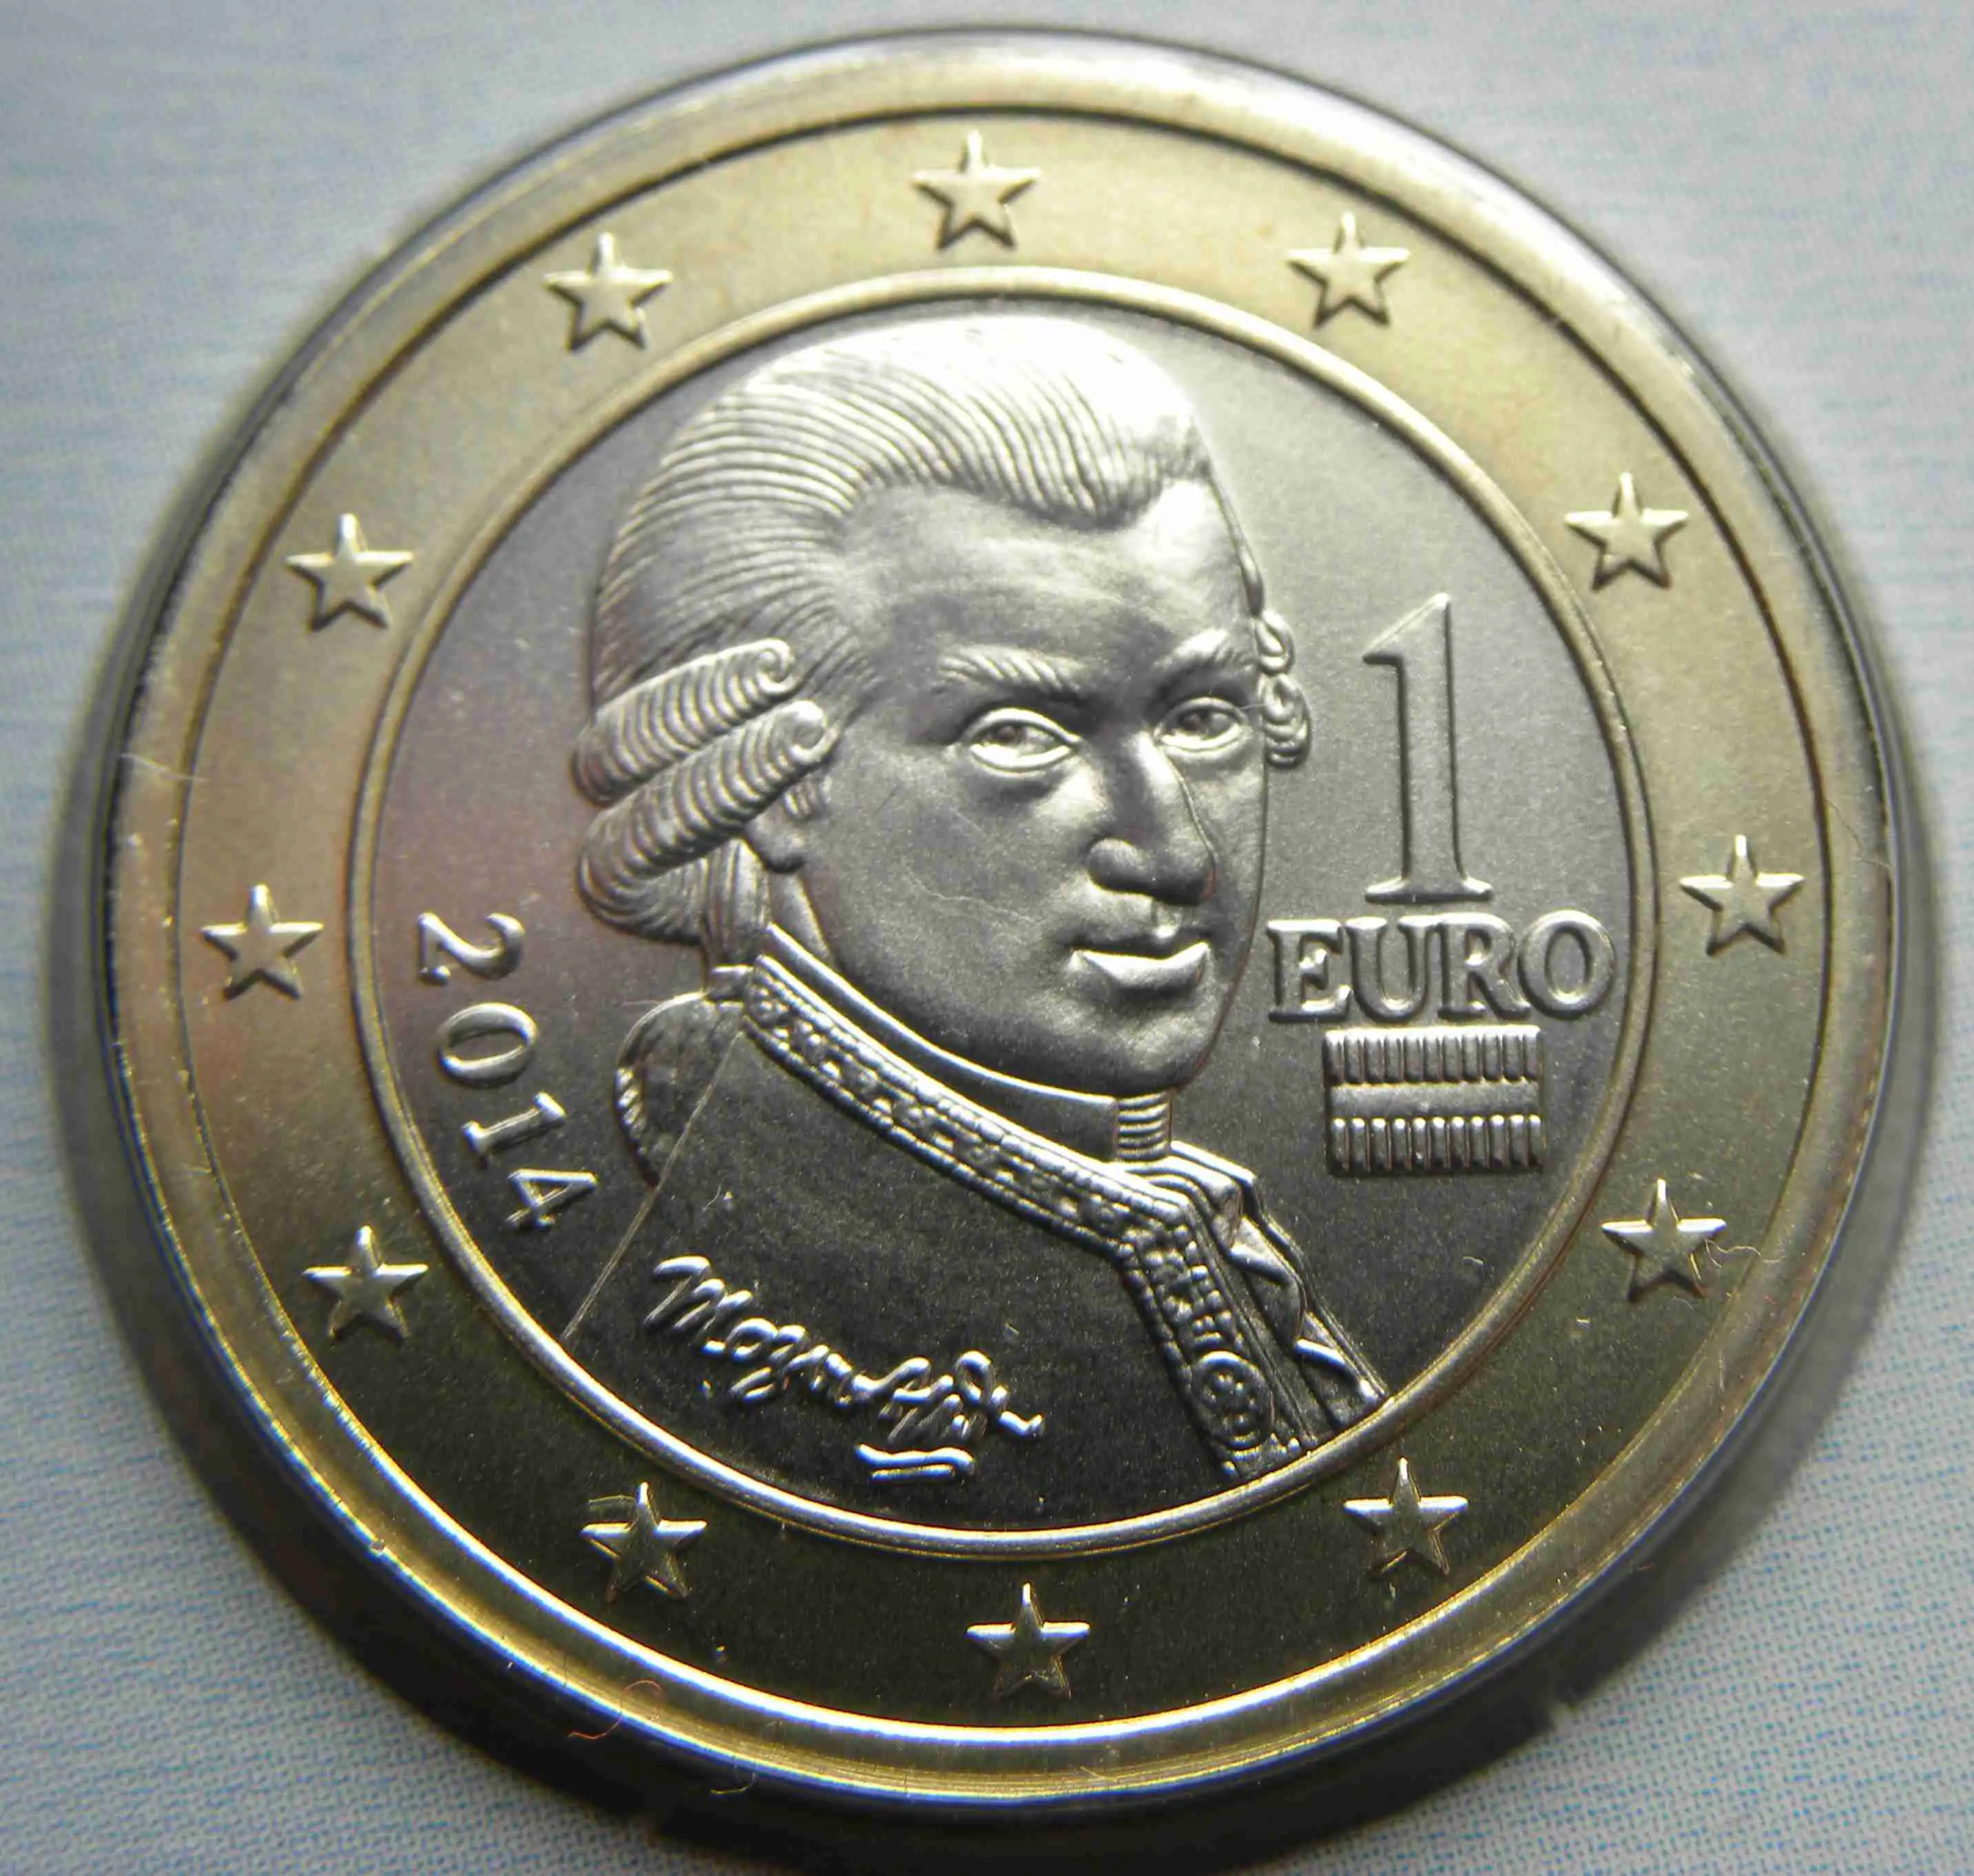 Österreich 1 Euro Münze 2014 - euro-muenzen.tv - Der Online Euromünzen